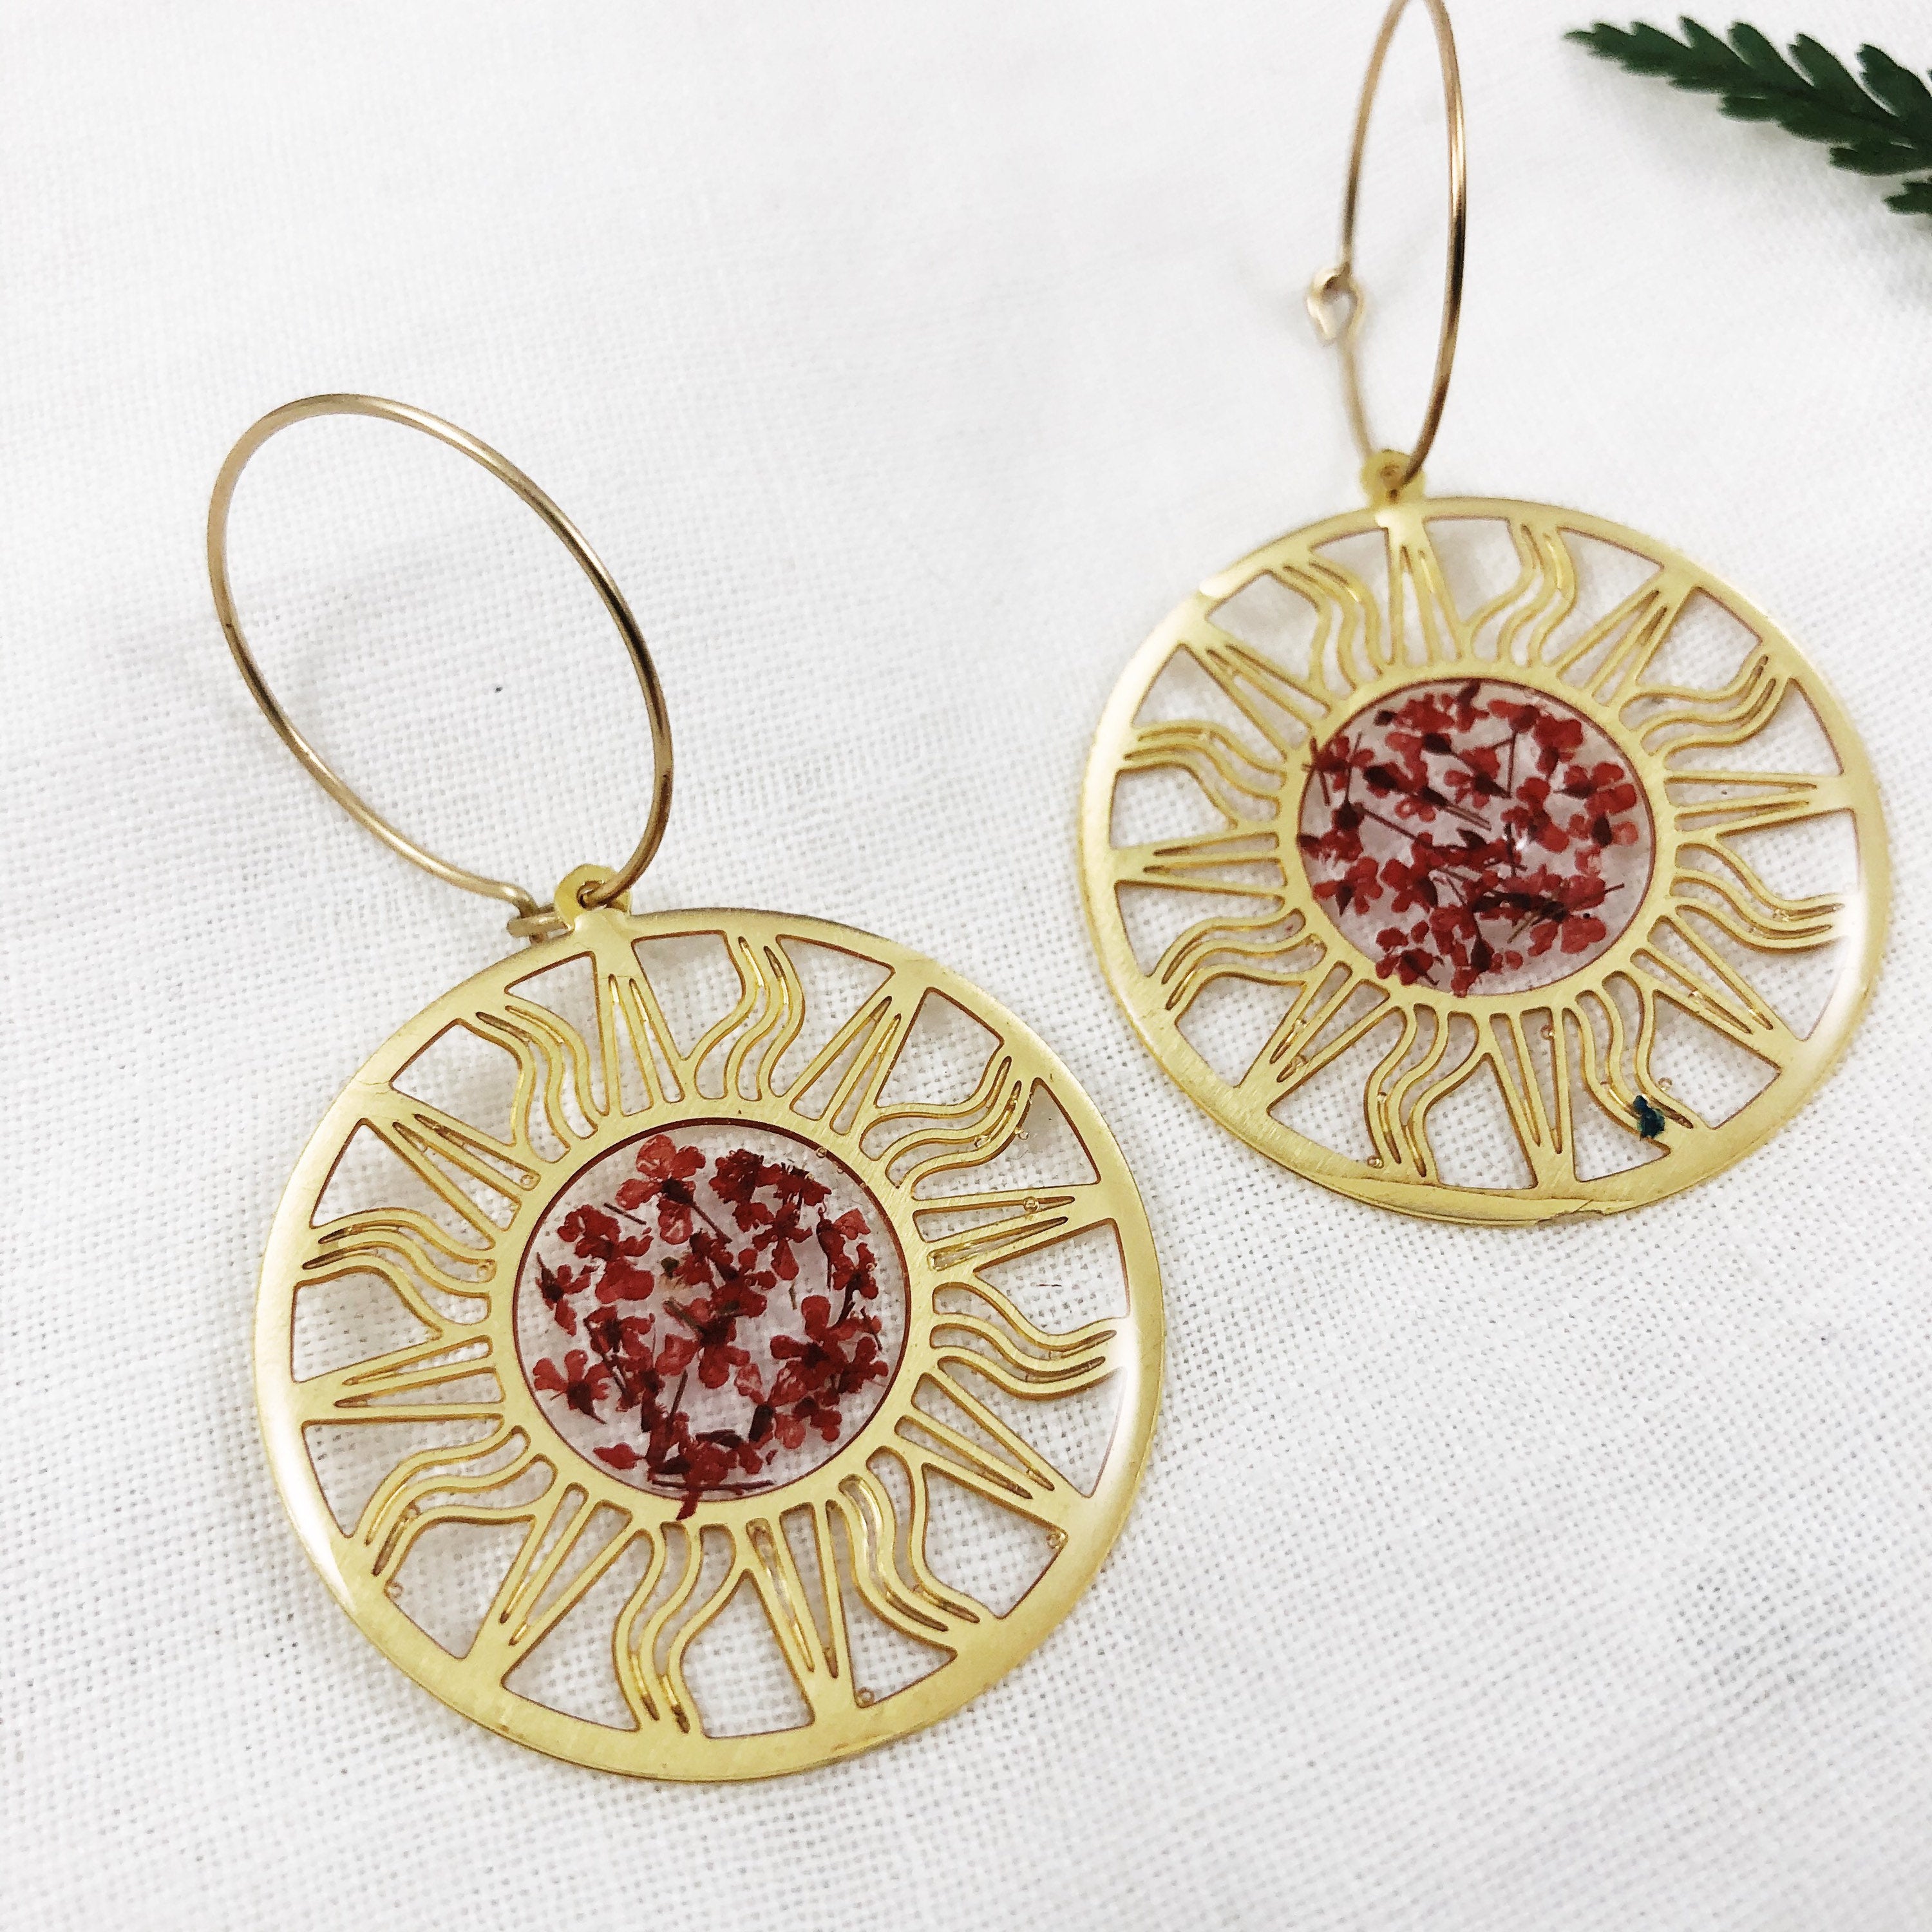 Aslan - Brass Sun Hoop Earrings with Red Queen Anne's Lace